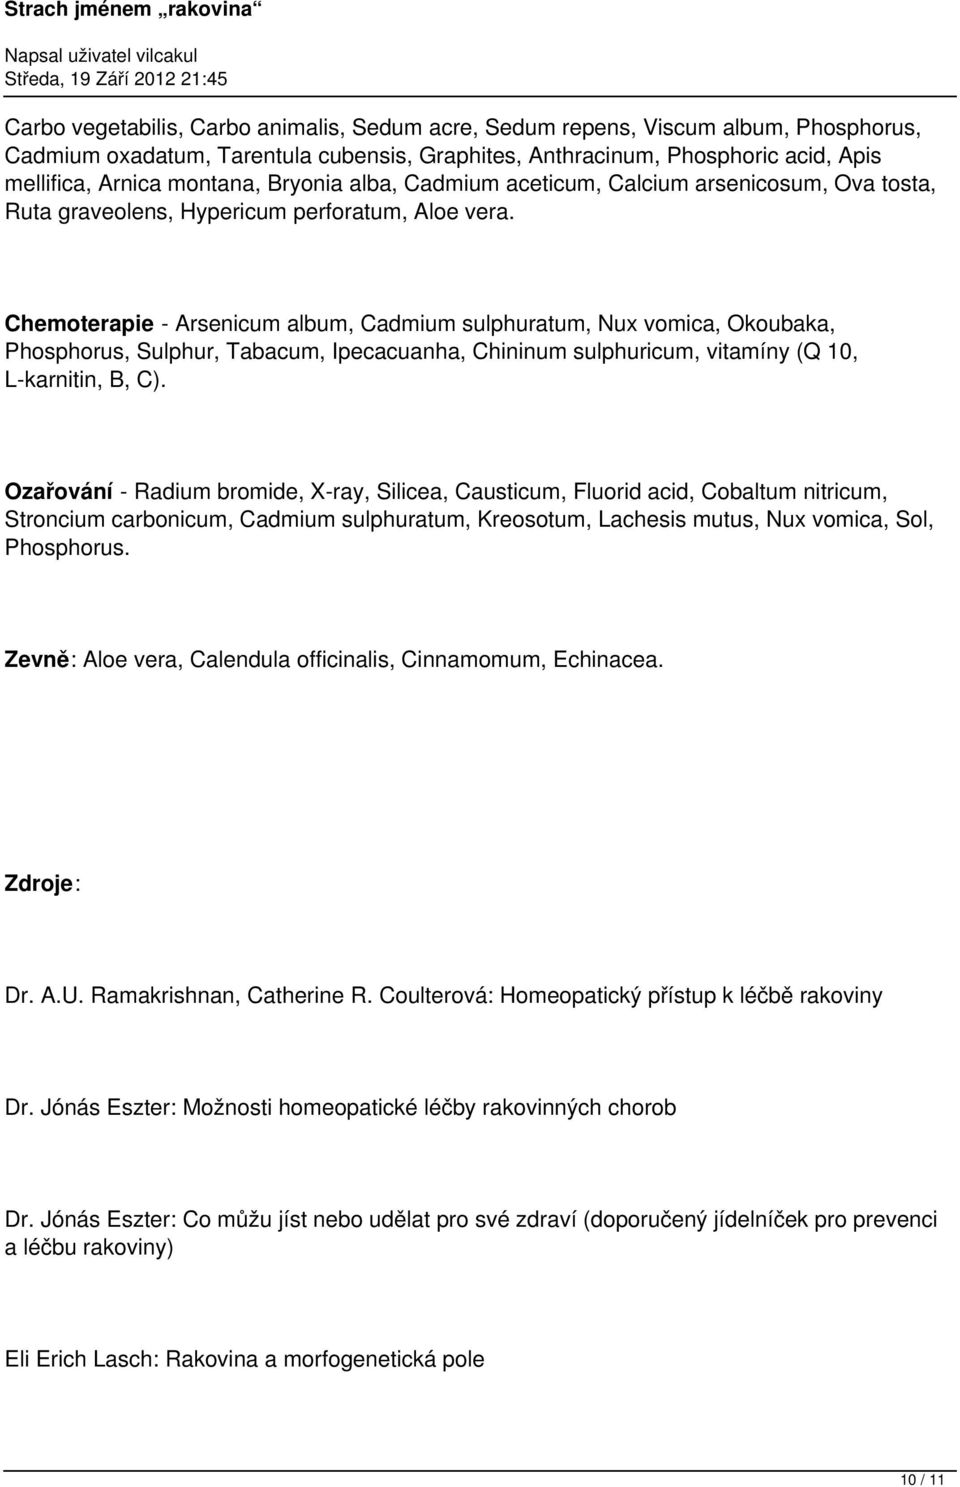 Chemoterapie - Arsenicum album, Cadmium sulphuratum, Nux vomica, Okoubaka, Phosphorus, Sulphur, Tabacum, Ipecacuanha, Chininum sulphuricum, vitamíny (Q 10, L-karnitin, B, C).